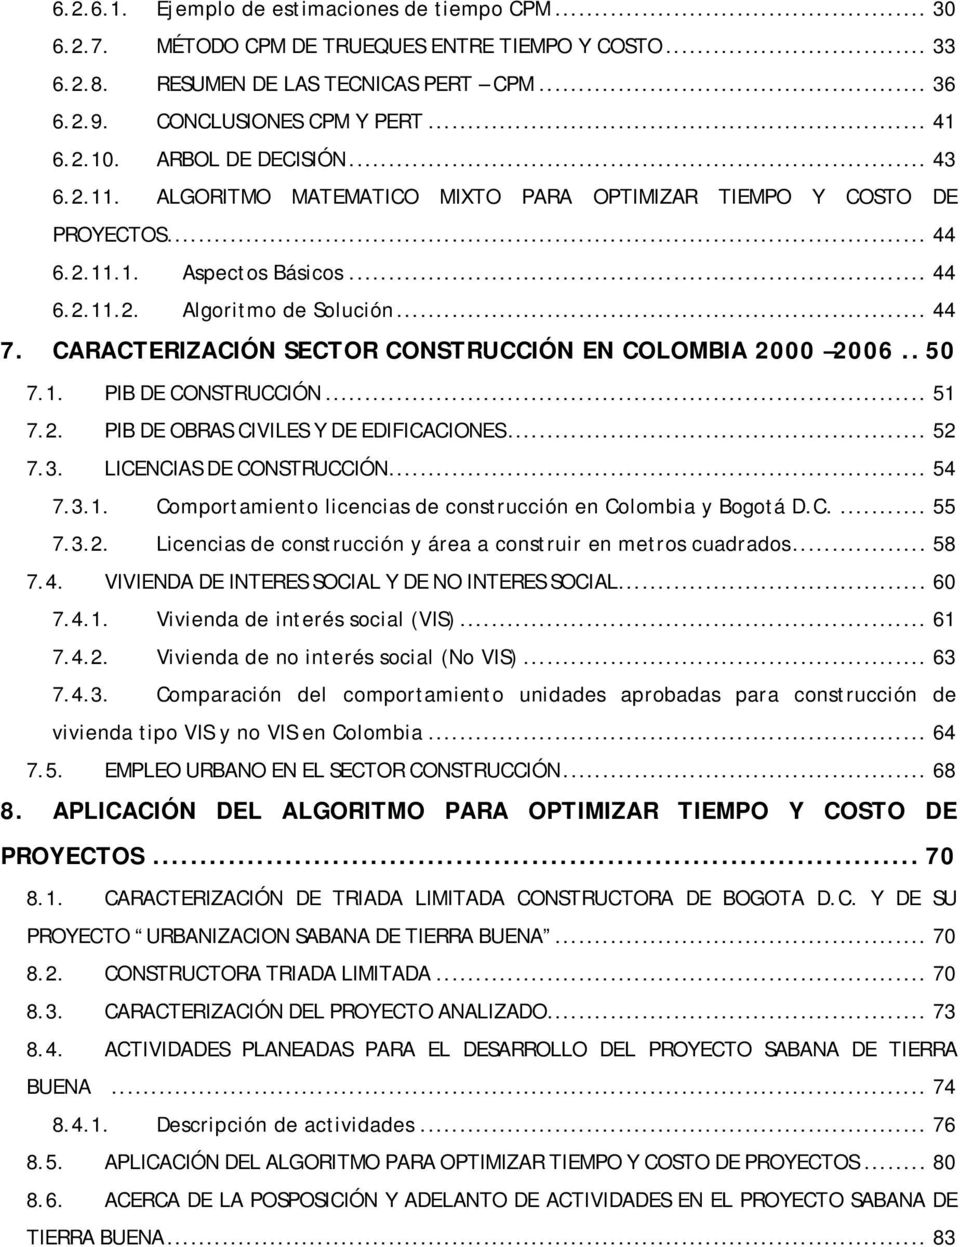 CARACTERIZACIÓN SECTOR CONSTRUCCIÓN EN COLOMBIA 2000 2006.. 50 7.1. PIB DE CONSTRUCCIÓN... 51 7.2. PIB DE OBRAS CIVILES Y DE EDIFICACIONES... 52 7.3. LICENCIAS DE CONSTRUCCIÓN... 54 7.3.1. Comportamiento licencias de construcción en Colombia y Bogotá D.